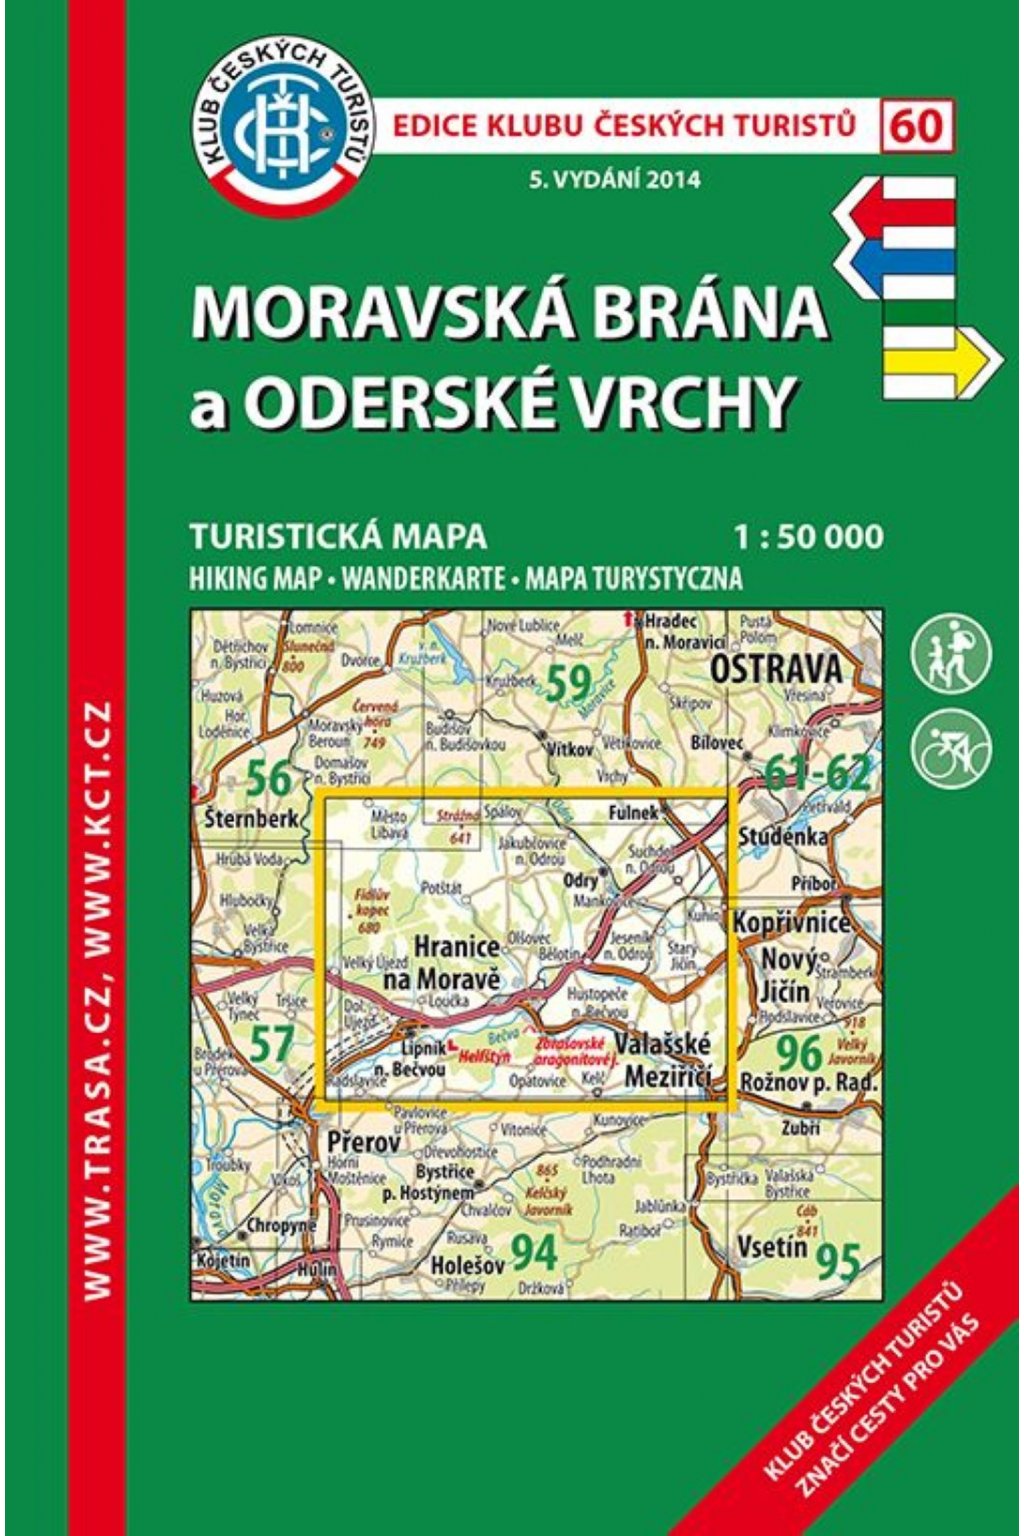 60. Moravská brána,Orderské vrchy, 2018